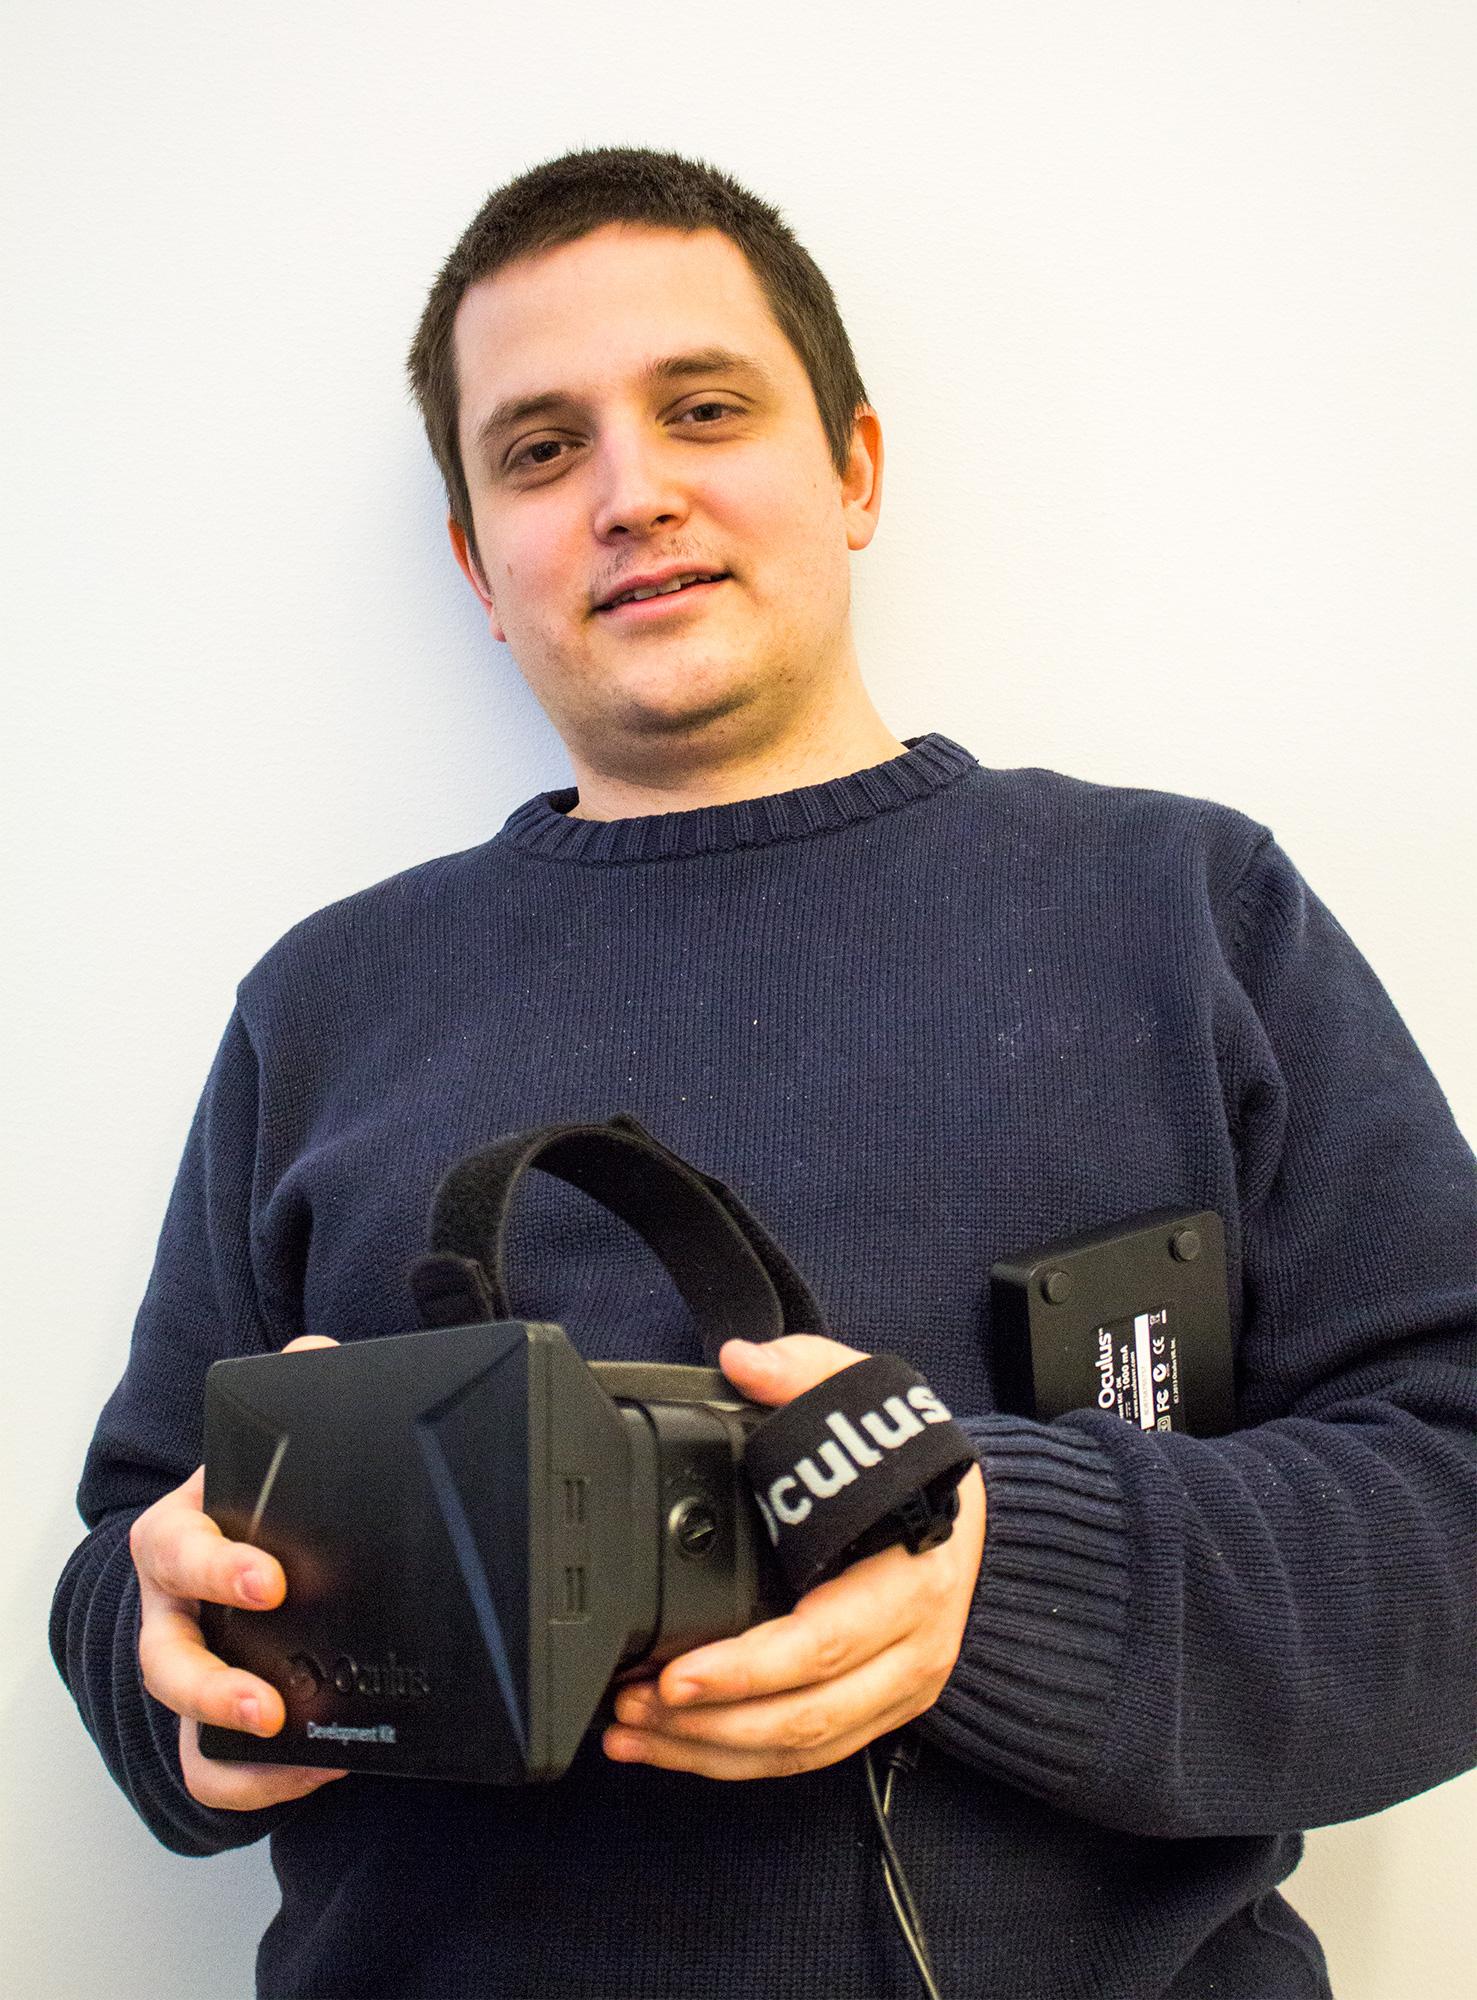 Christer-Andre Fagerslett lot oss prøve sin utviklermodell av Oculus Rift.Foto: Jørgen Elton Nilsen, Hardware.no